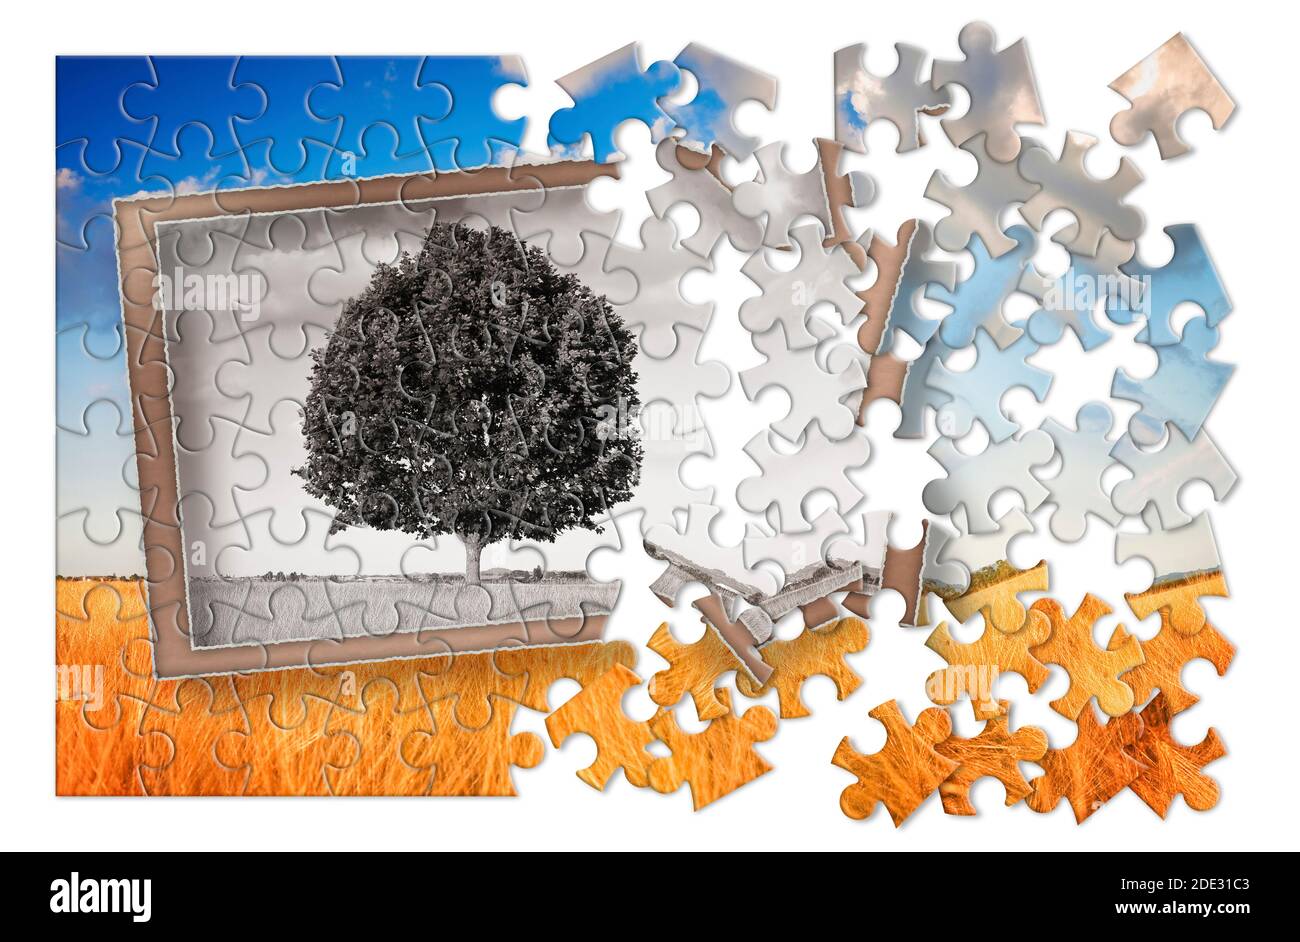 Planen Sie Ihren Urlaub in der Toskana - ein isolierter Baum in der Toskana Landschaft (Italien) - Konzept in Puzzleform Stockfoto